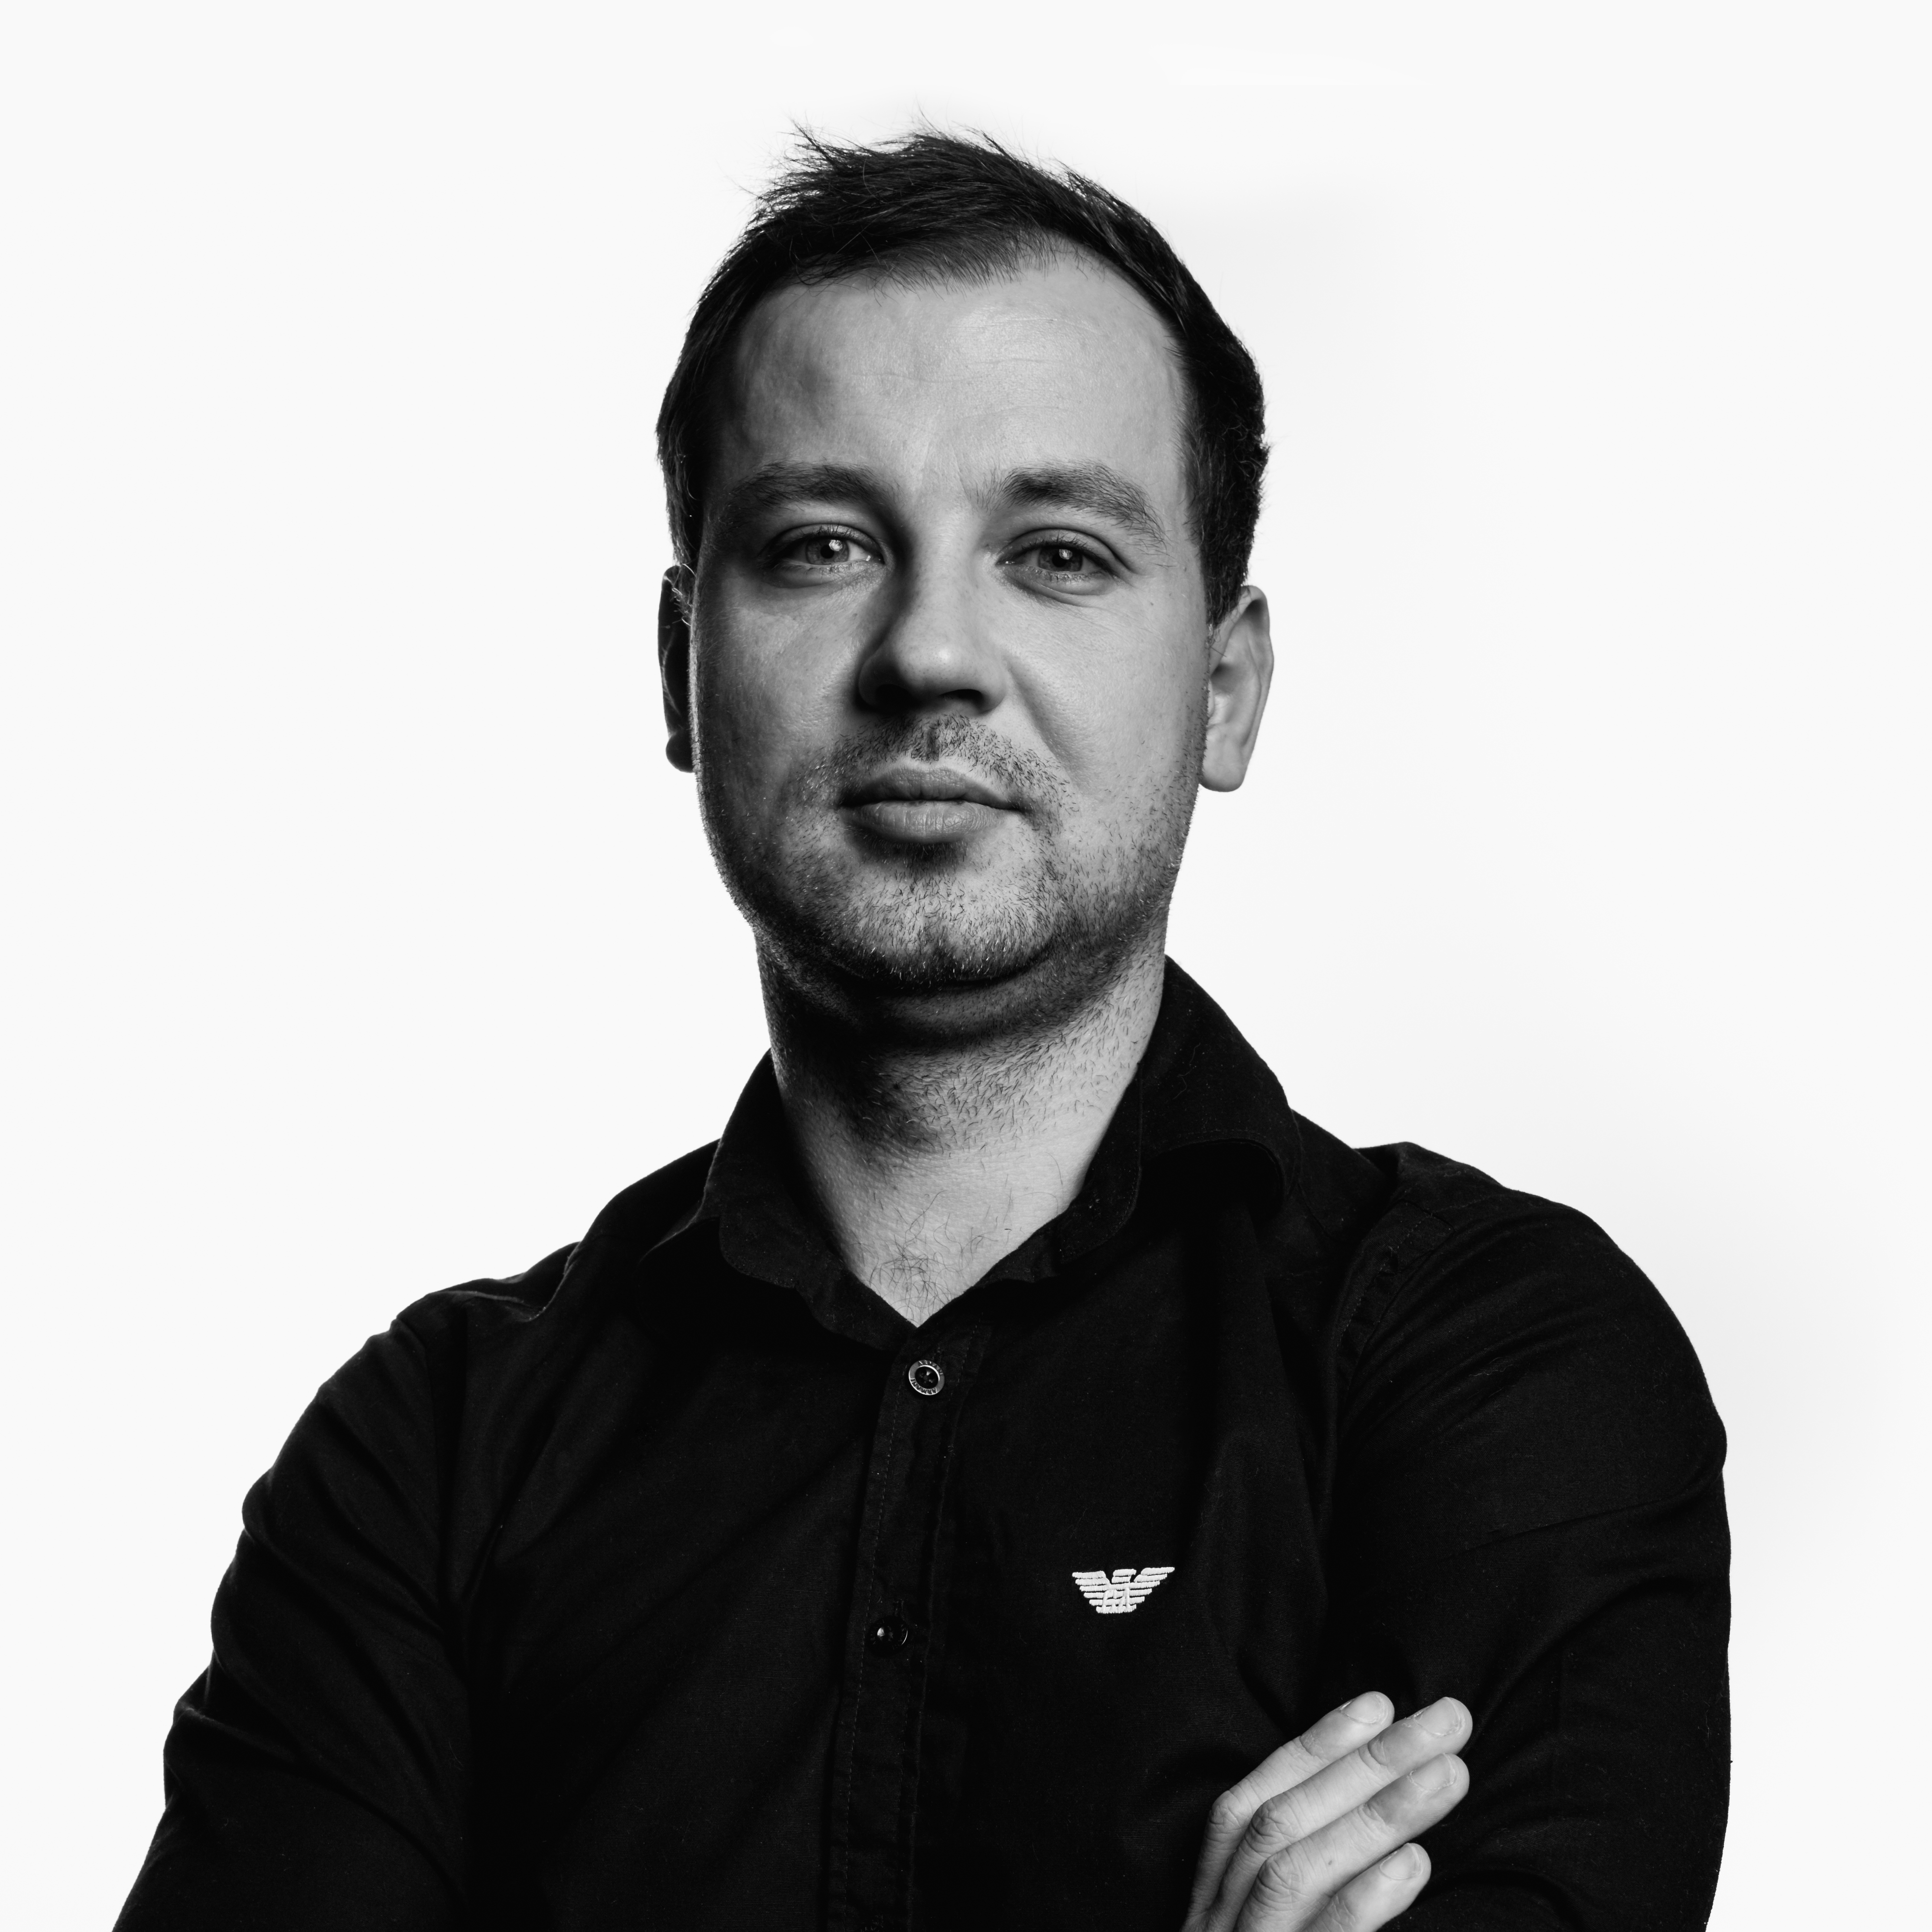 Piotr Piątek – Członek Zarządu, Projekt Manager, specjalizuje się w zarządzaniu projektami w zakresie
nowych technologii. W projekcie pełni rolę Kierownika Zarządzającego.